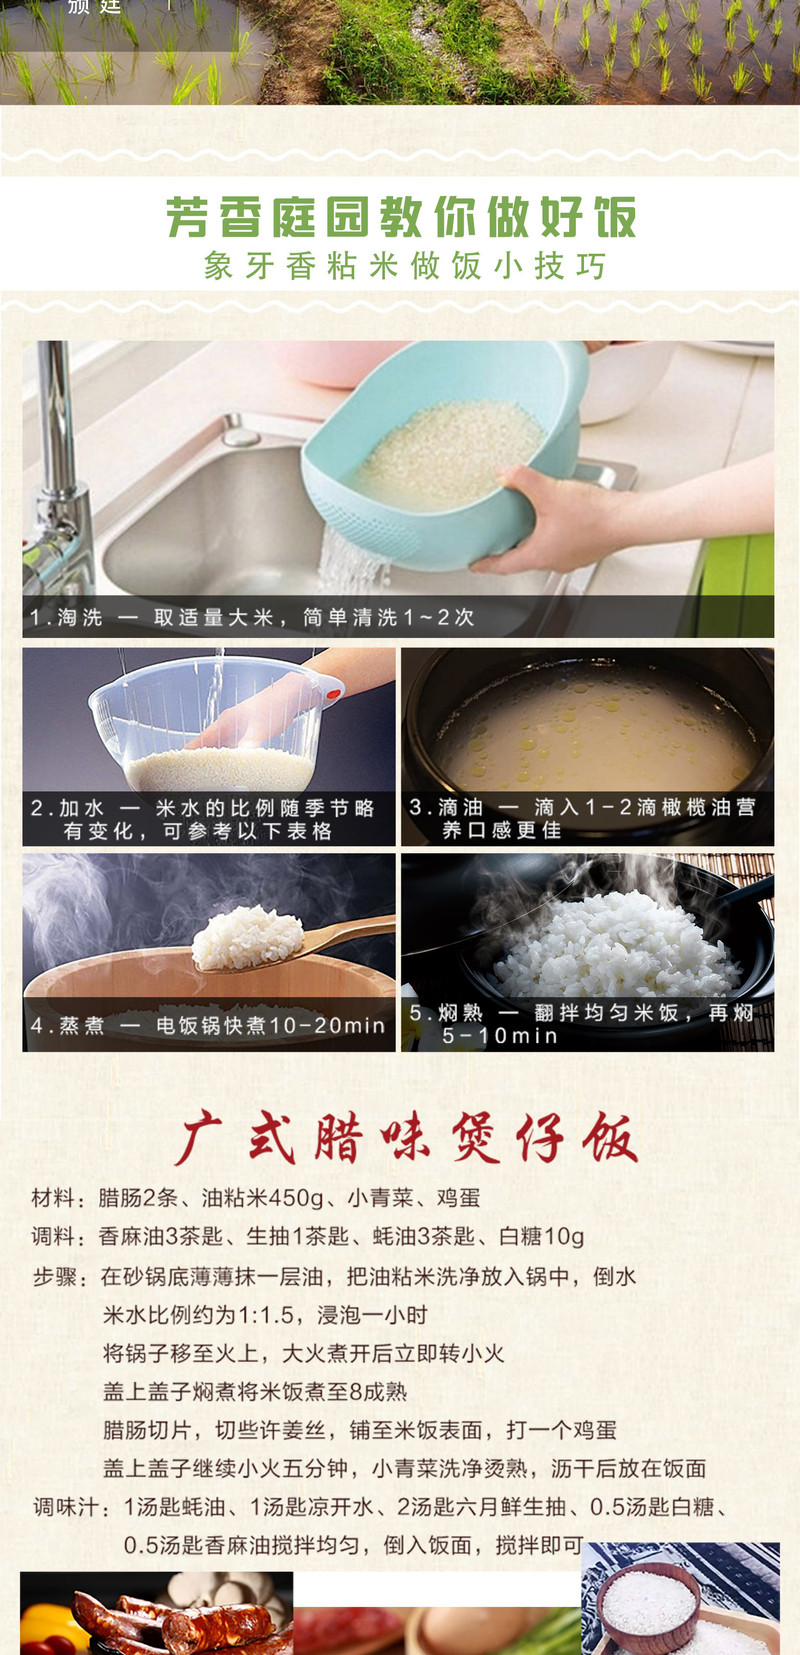 千山白玉香米 【新米】鼠牙油粘 长粒籼米 真空装 2KG (4斤)